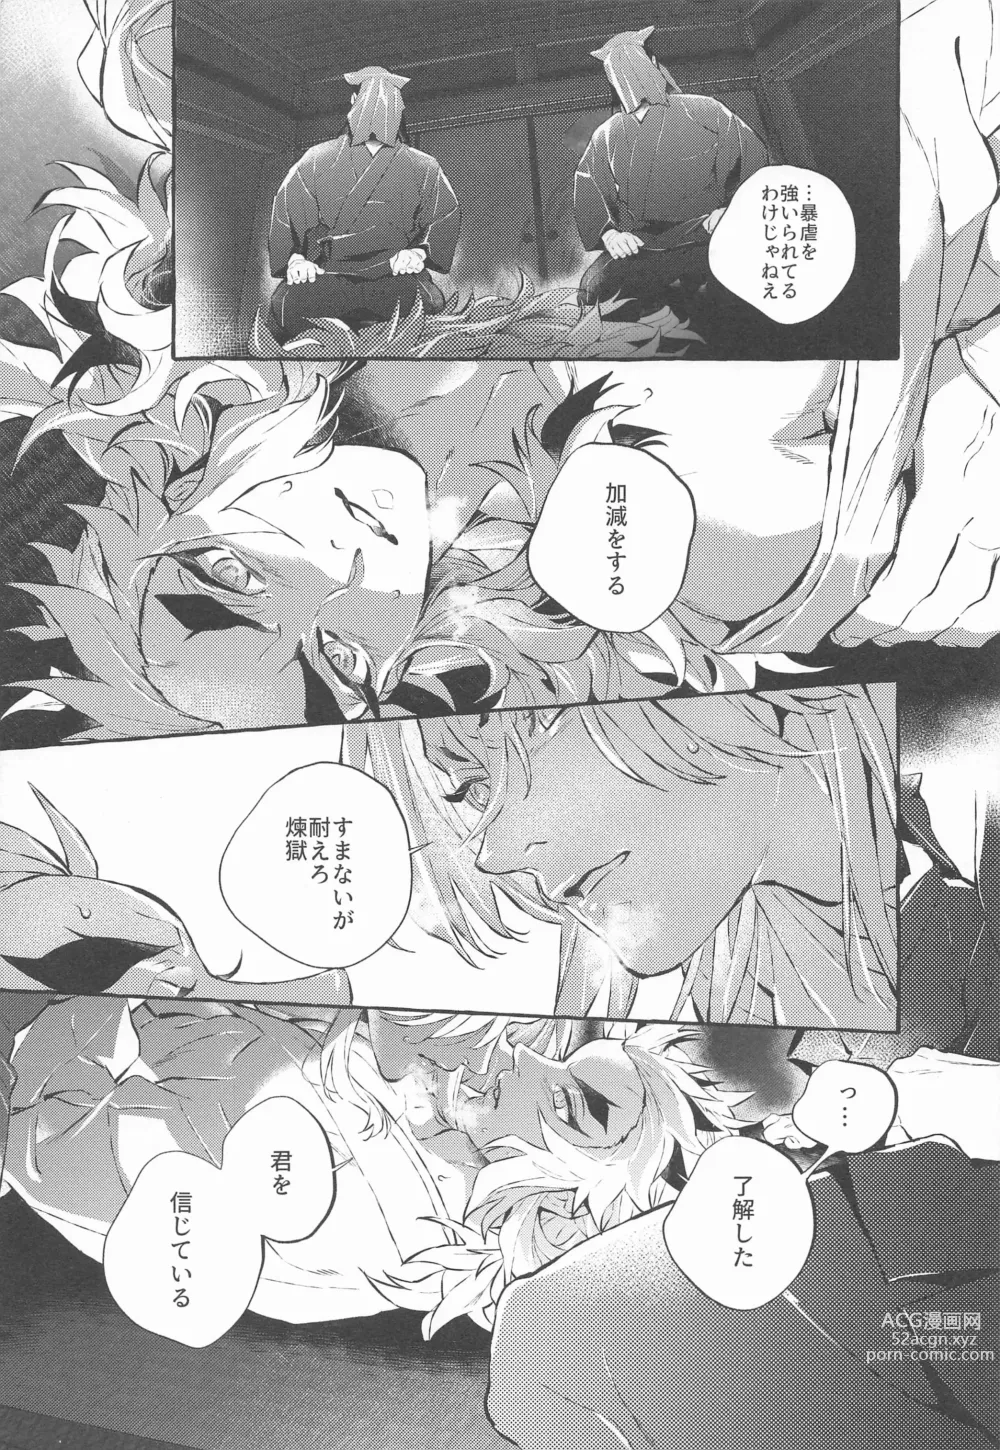 Page 4 of doujinshi beibisutorangurazu／kaikabetsuatsuraebangaihenhabutae